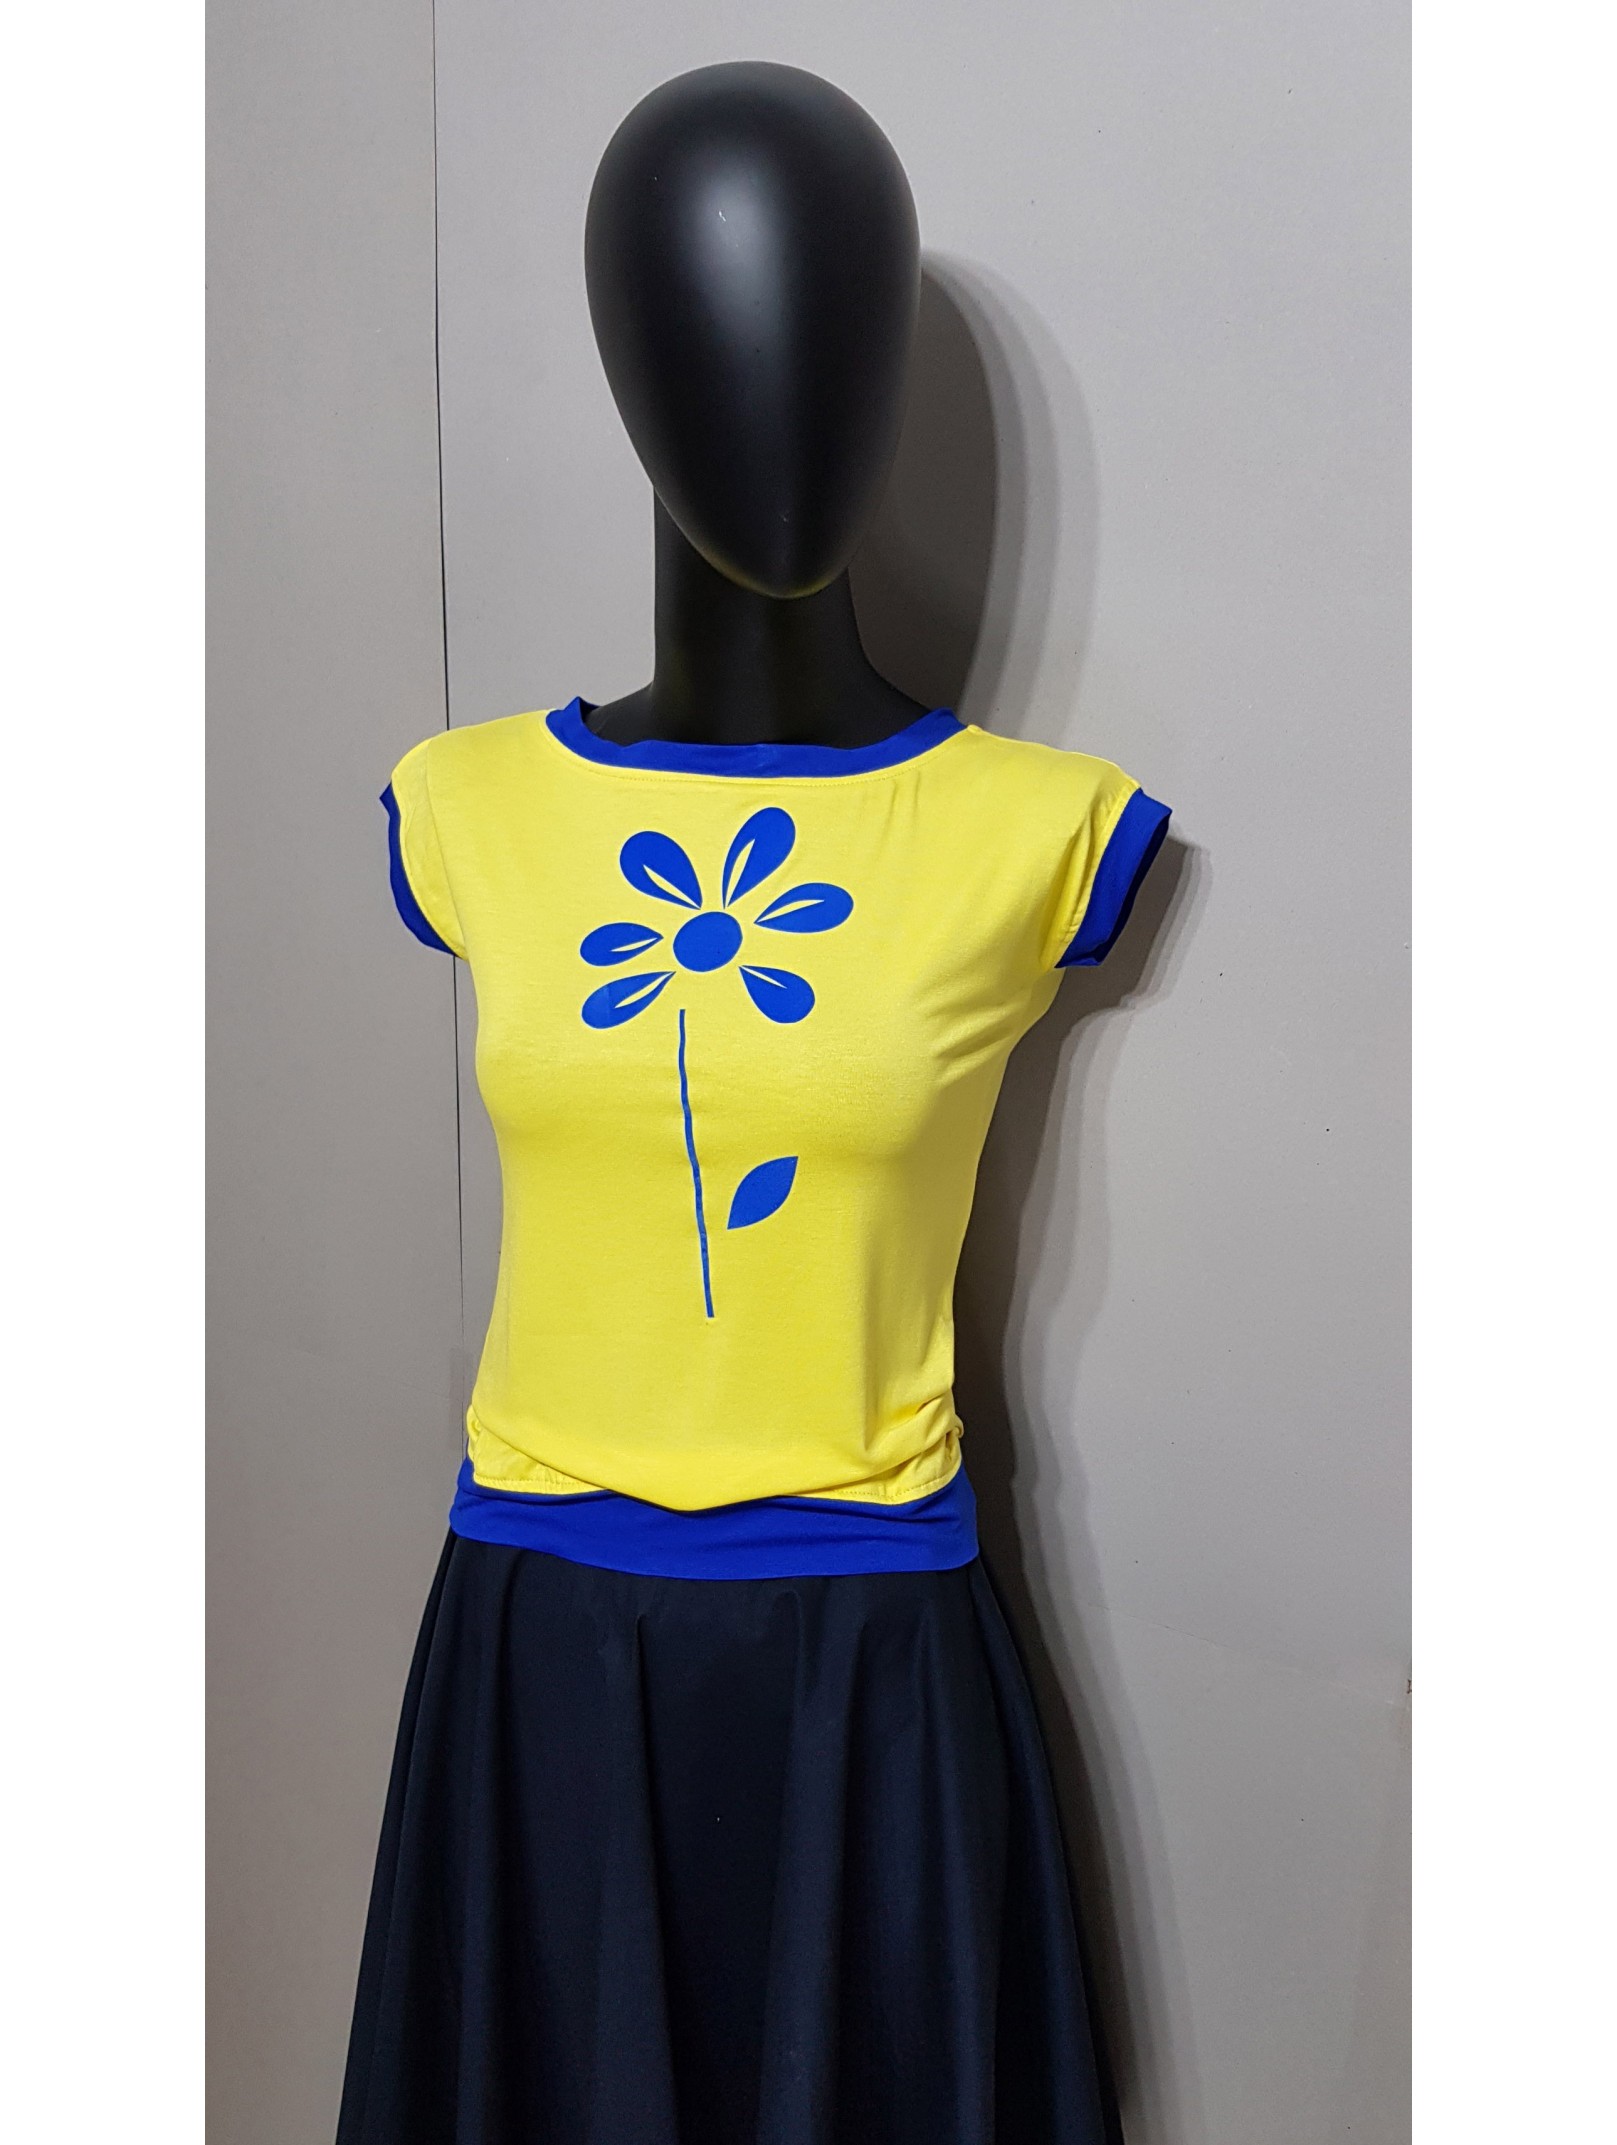 Gelbe Shirt mit Royalblaue Blume Applikation. gel5522.